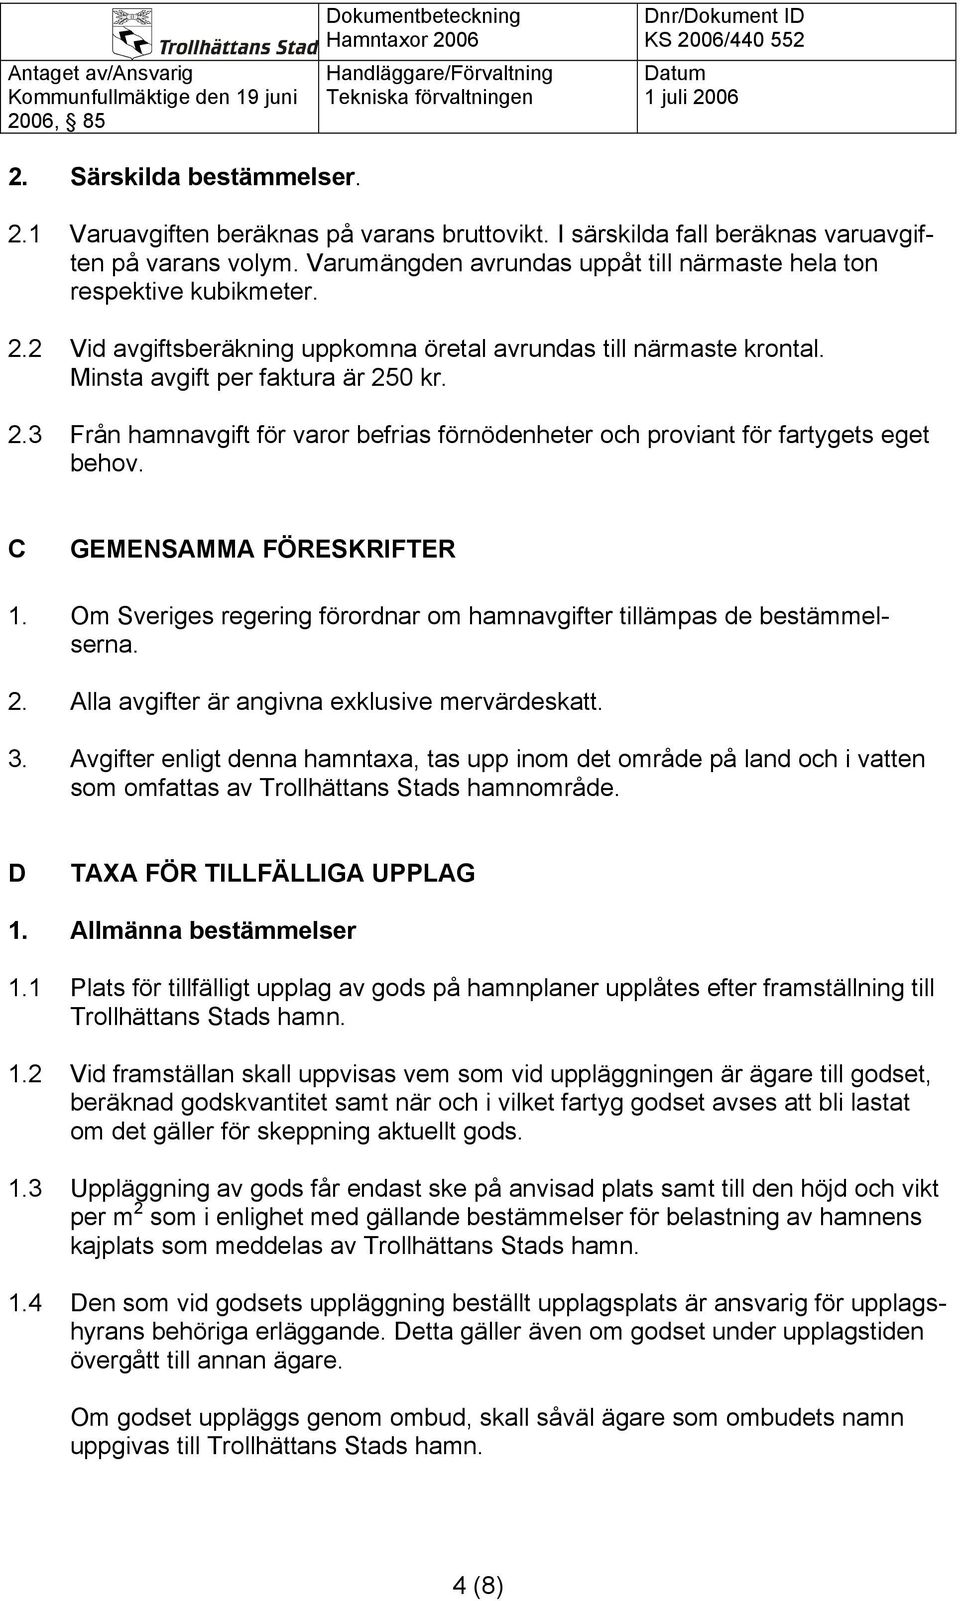 C GEMENSAMMA FÖRESKRIFTER 1. Om Sveriges regering förordnar om hamnavgifter tillämpas de bestämmelserna. 2. Alla avgifter är angivna exklusive mervärdeskatt. 3.